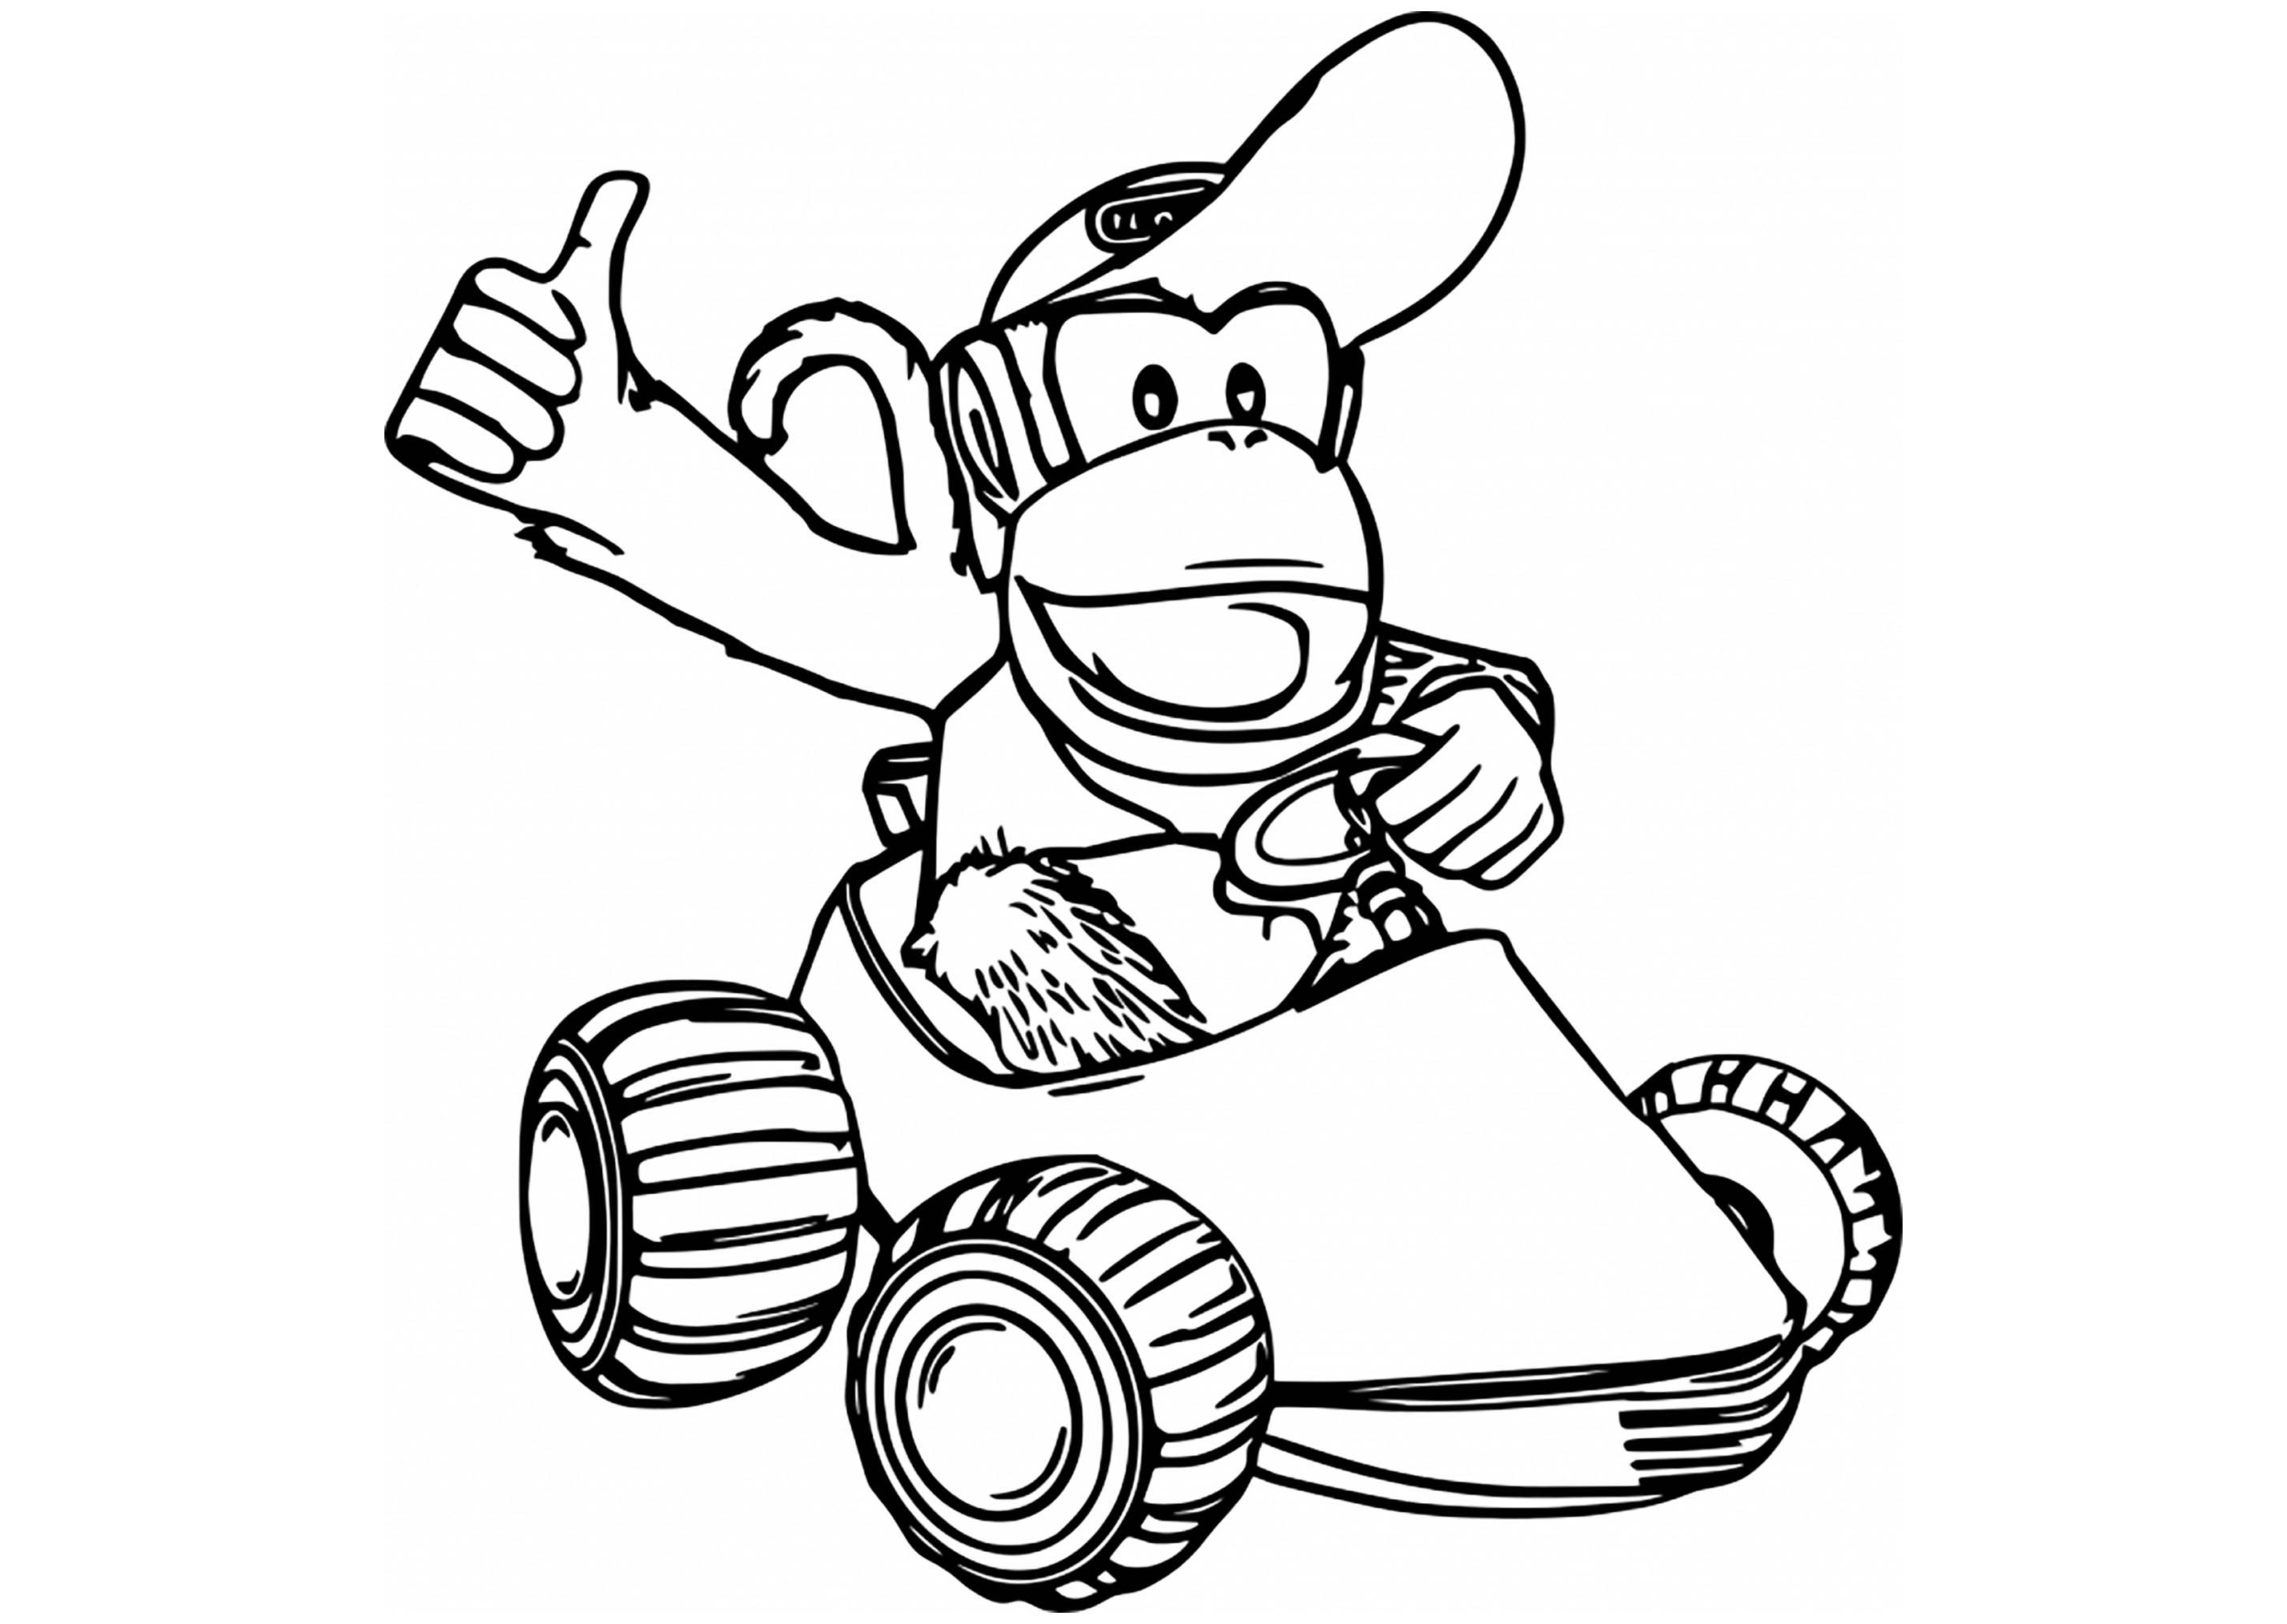 Mario Kart coloring page : Diddy Kong Kart